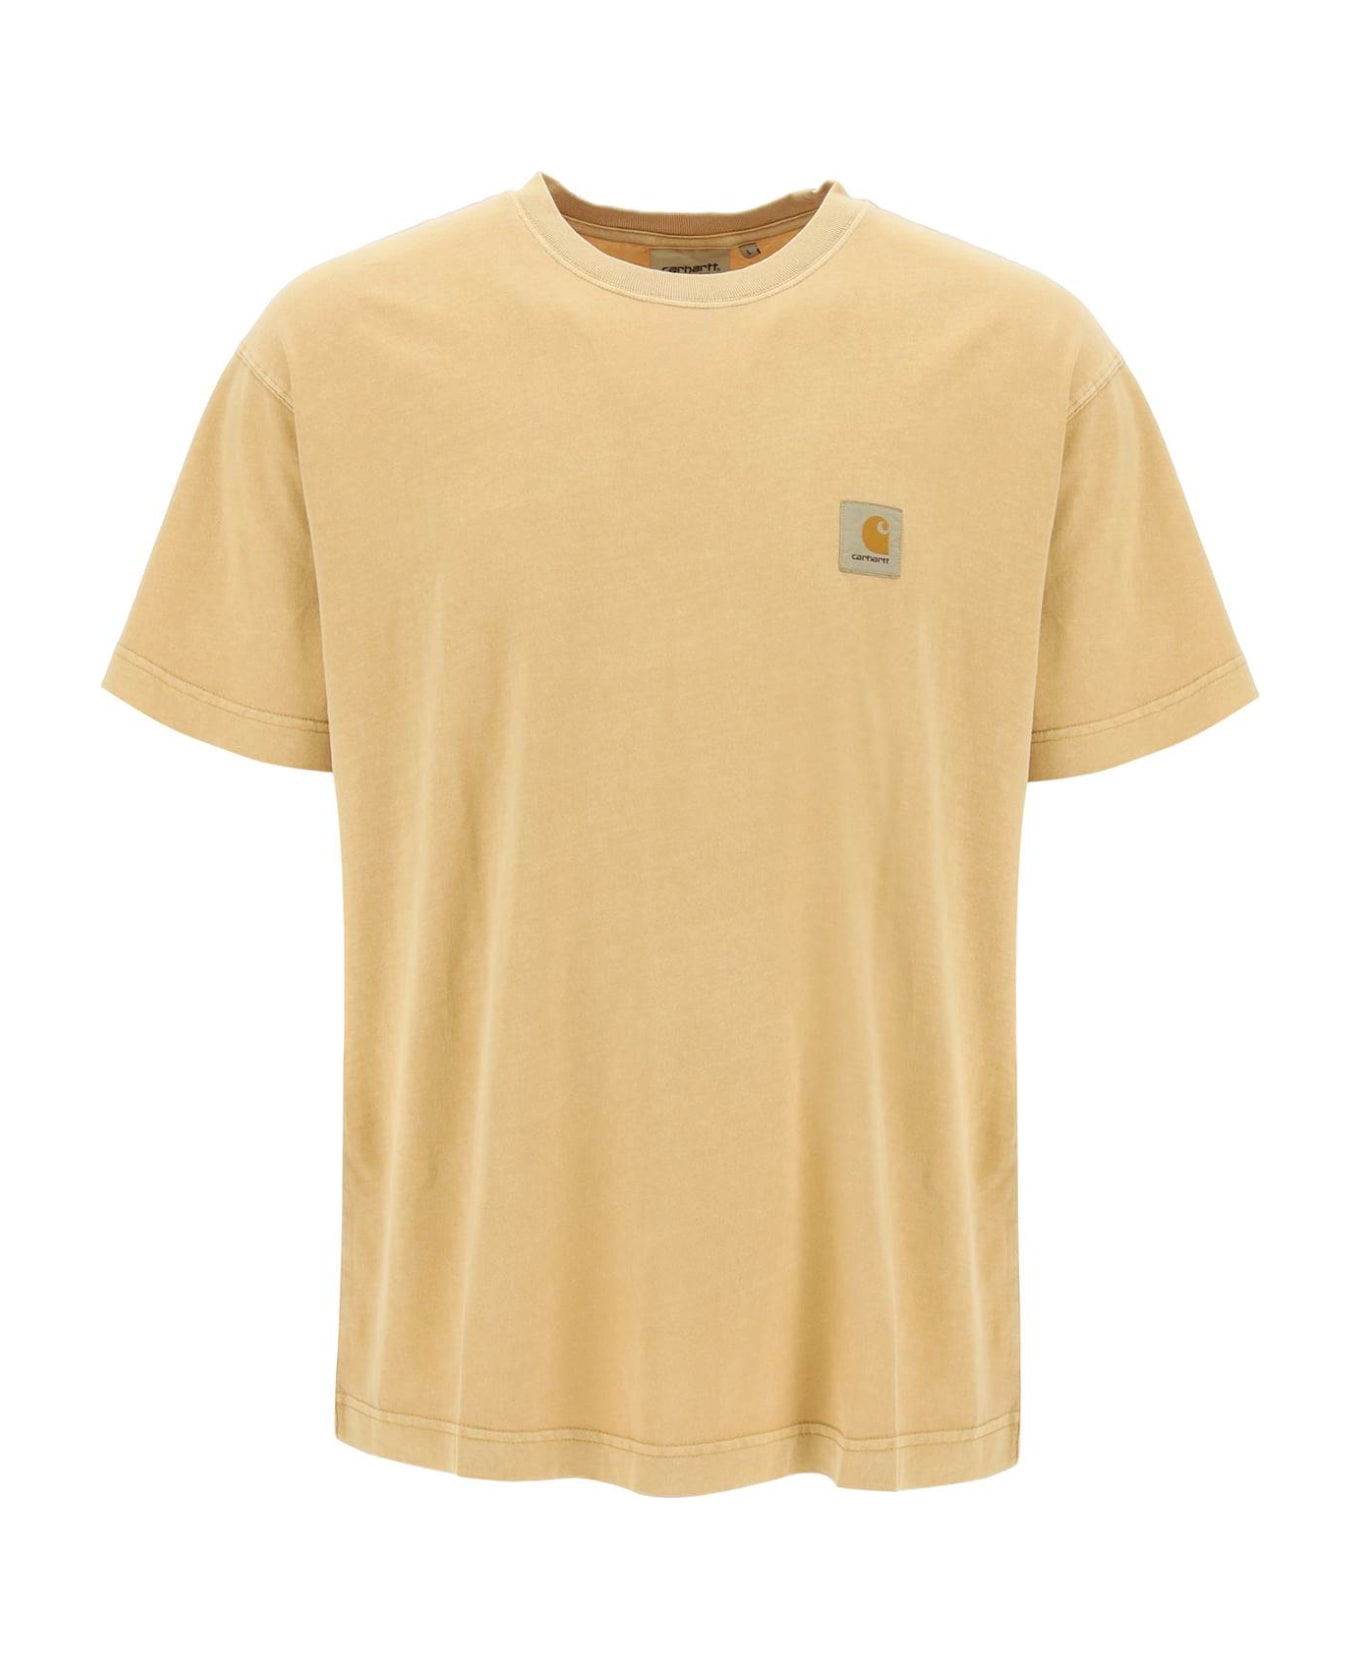 Carhartt Nelson T-shirt - BOURBON (Yellow)